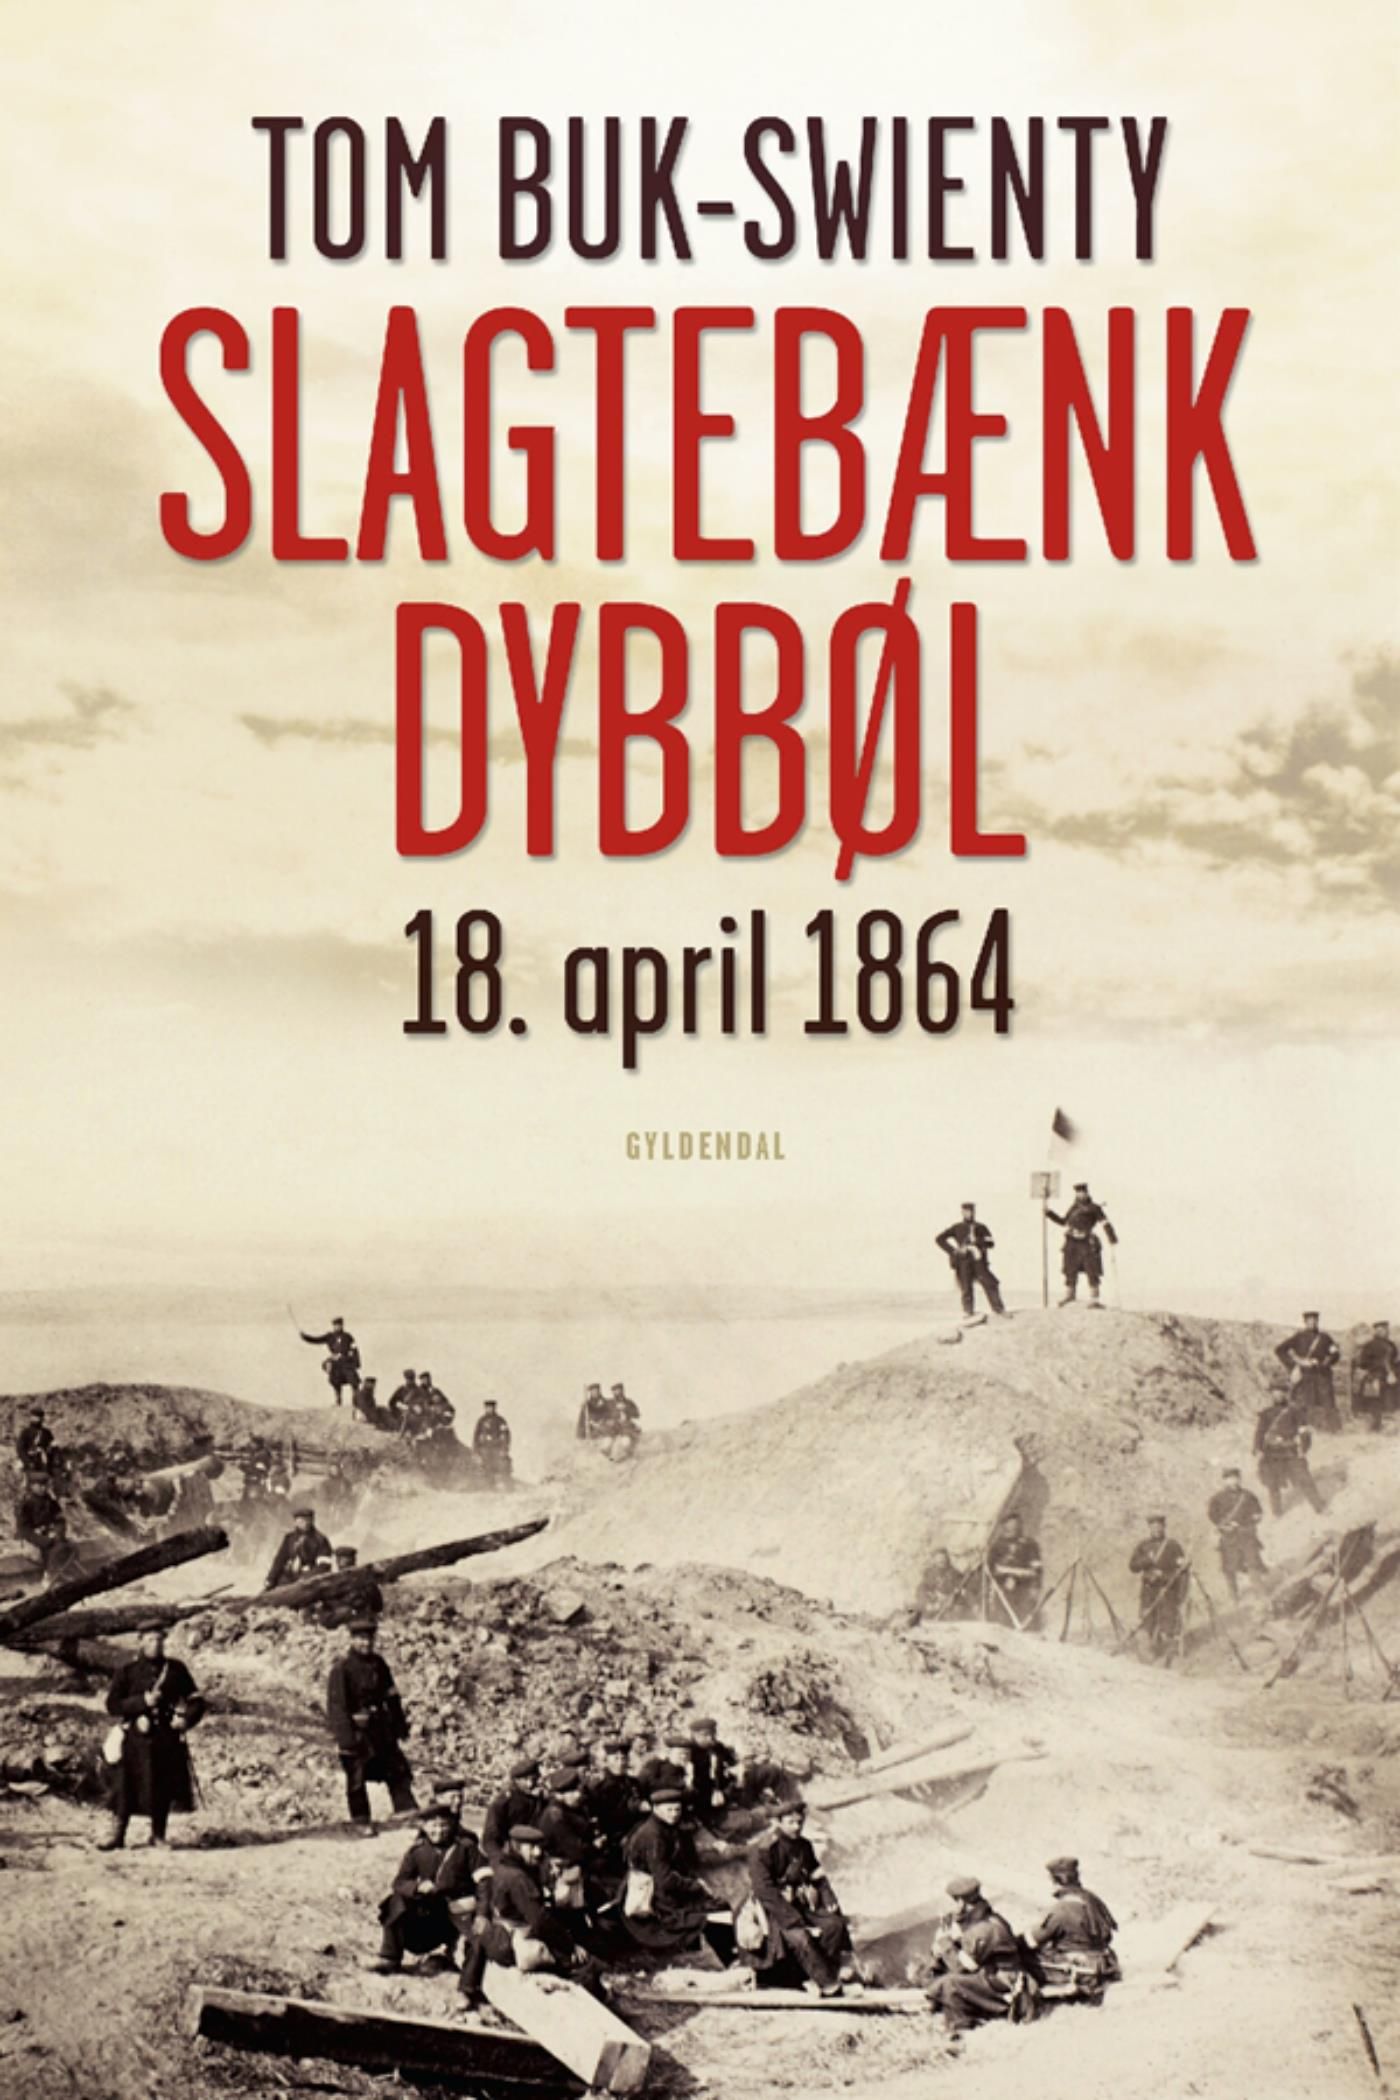 Slagtebænk Dybbøl, e-bok av Tom Buk-Swienty